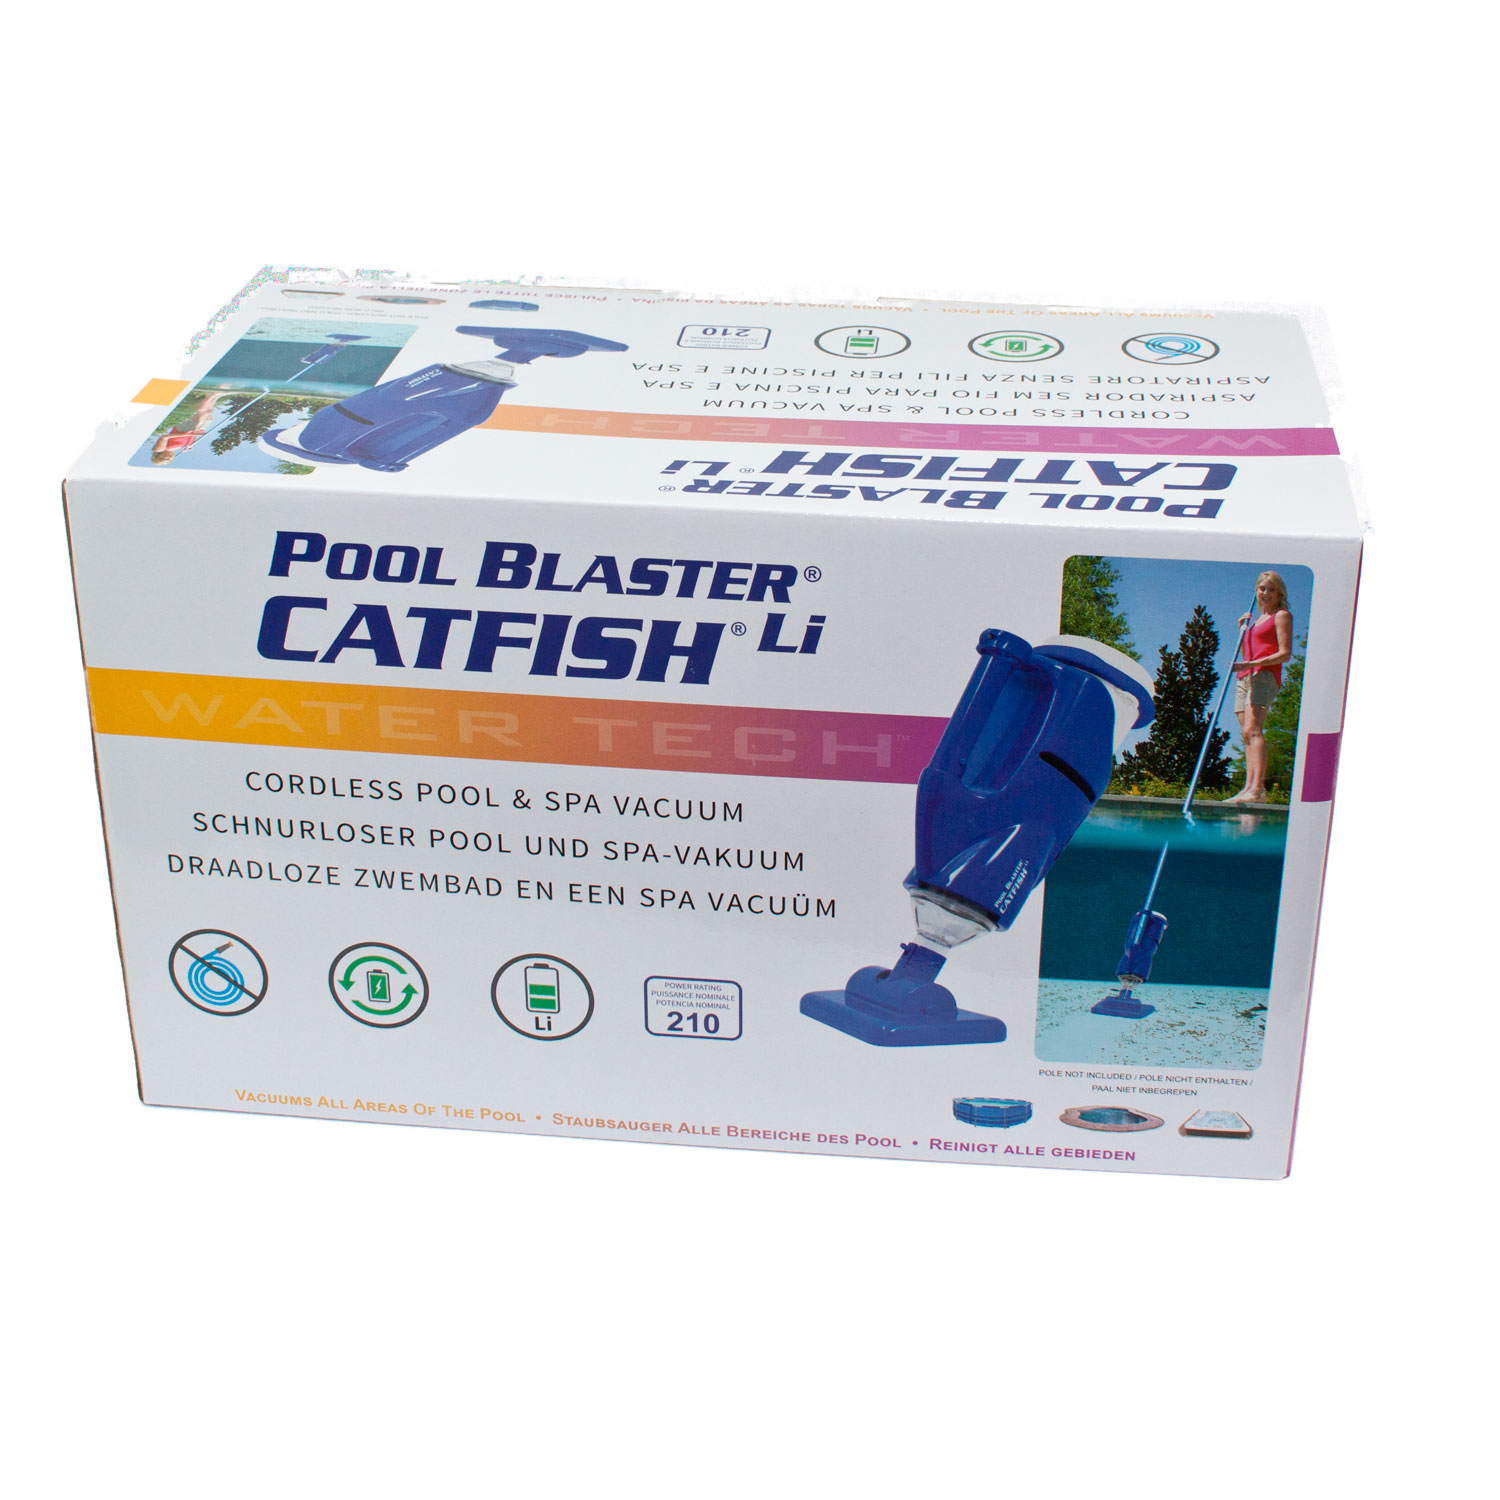 Poolreiniger Pool Blaster Catfish kabellos und akkubetrieben